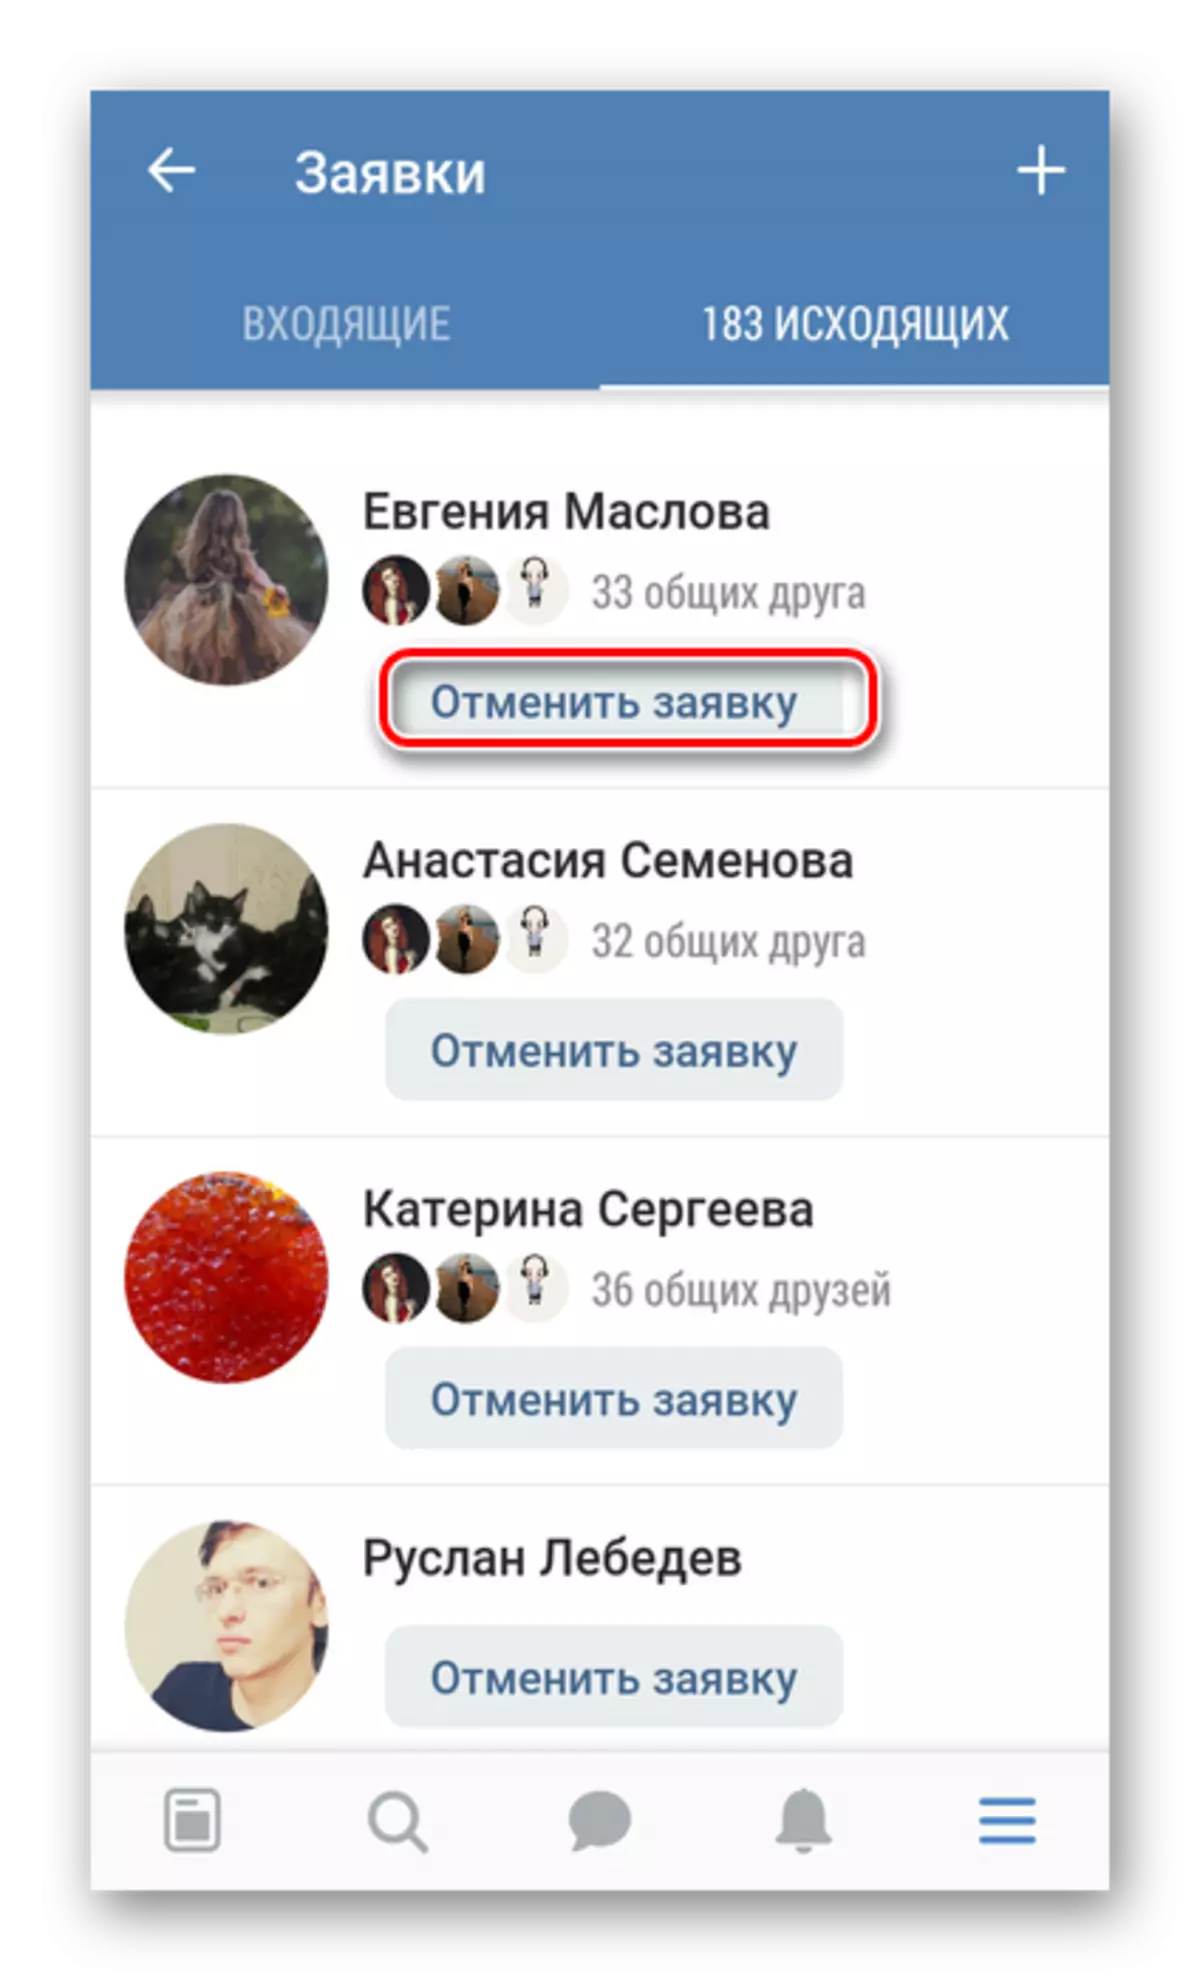 ยกเลิกแอปพลิเคชันมิตรภาพของคุณในแอปพลิเคชัน Vkontakte